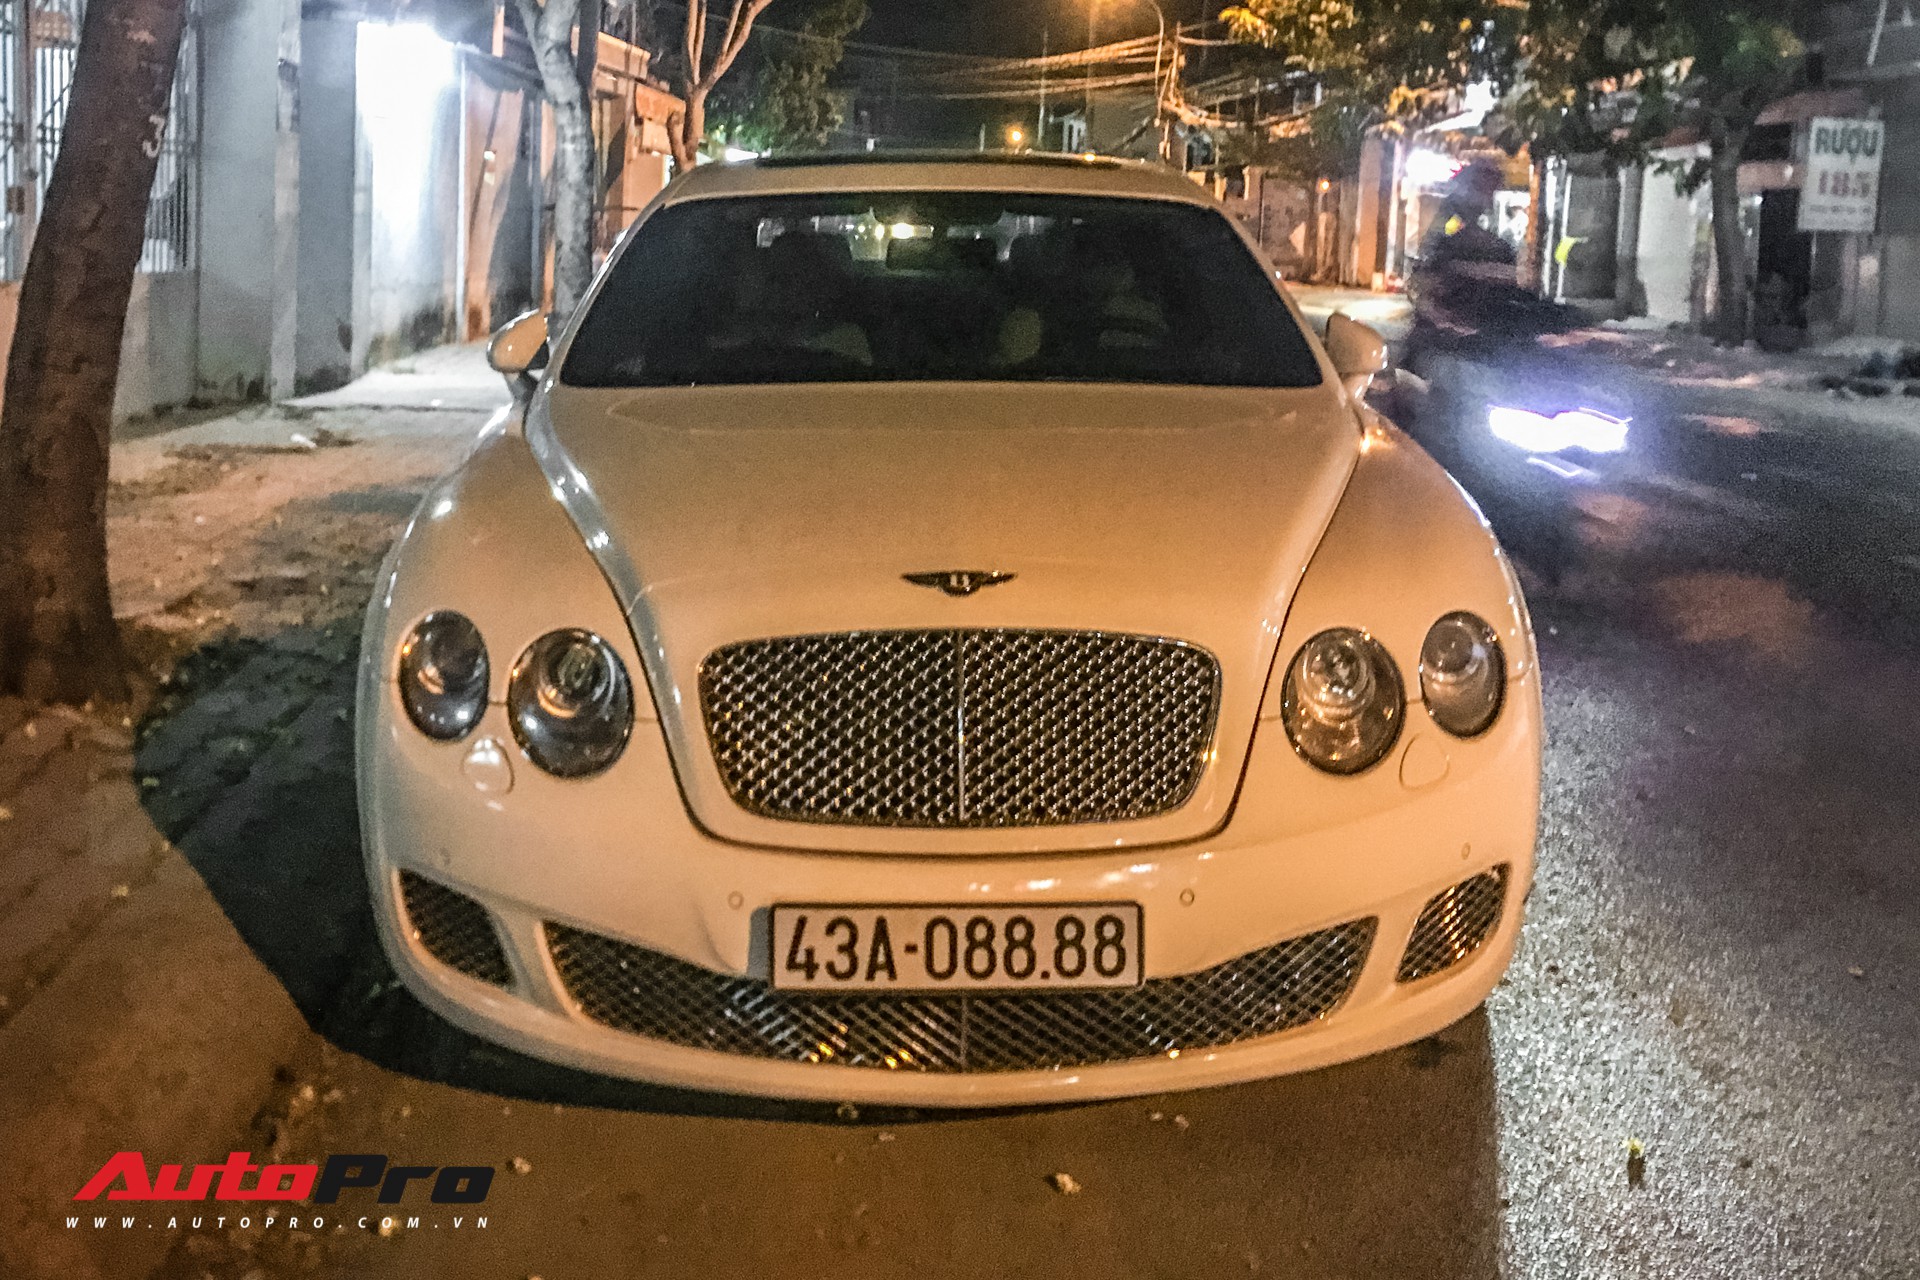 Video Bentley CFS 2007 độ như bản 2016 ở Việt Nam  Sieuxevietnam